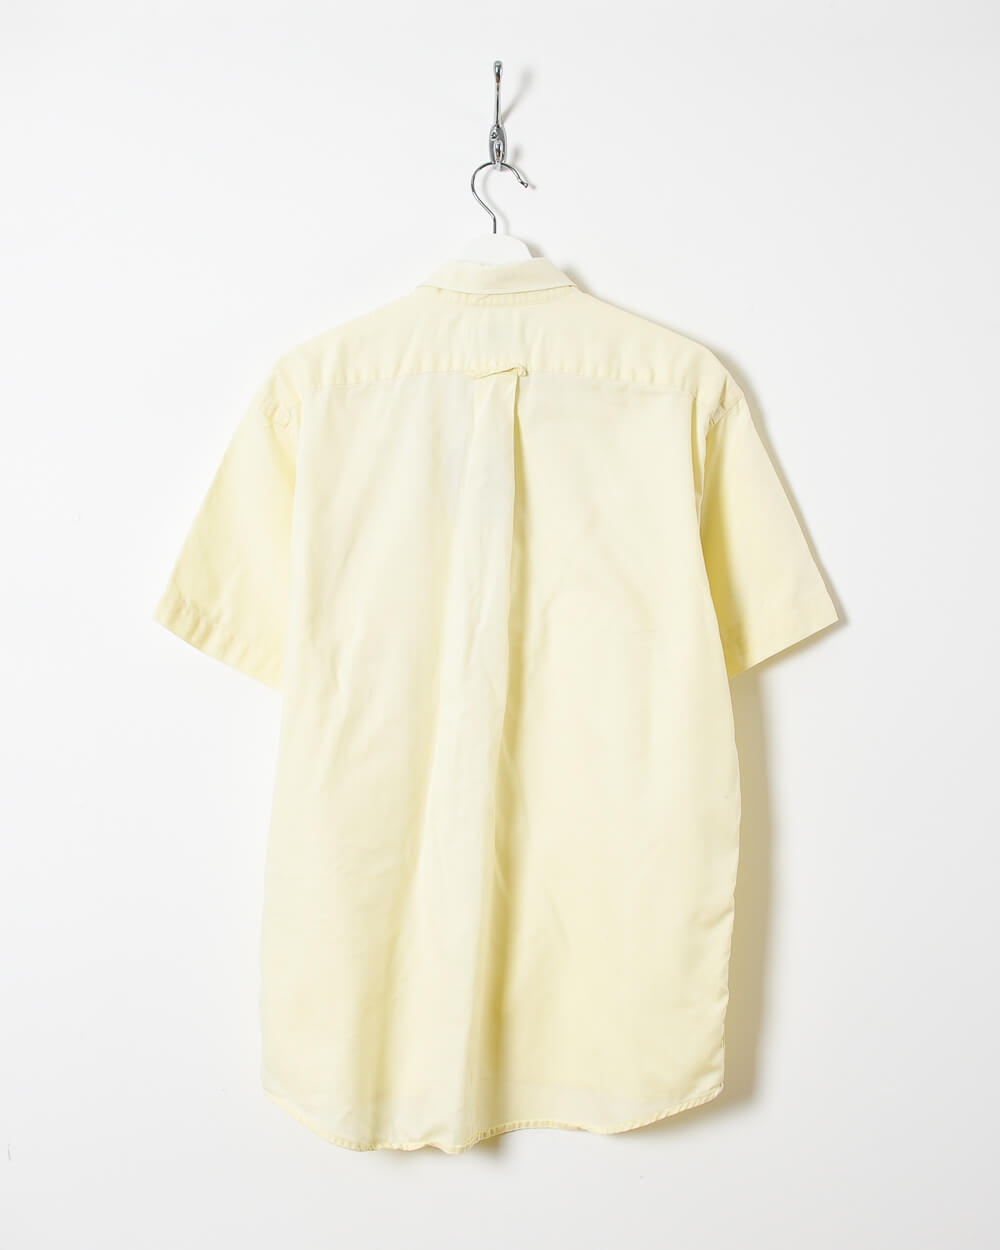 Neutral Chemise Lacoste Short Sleeved Shirt - Large